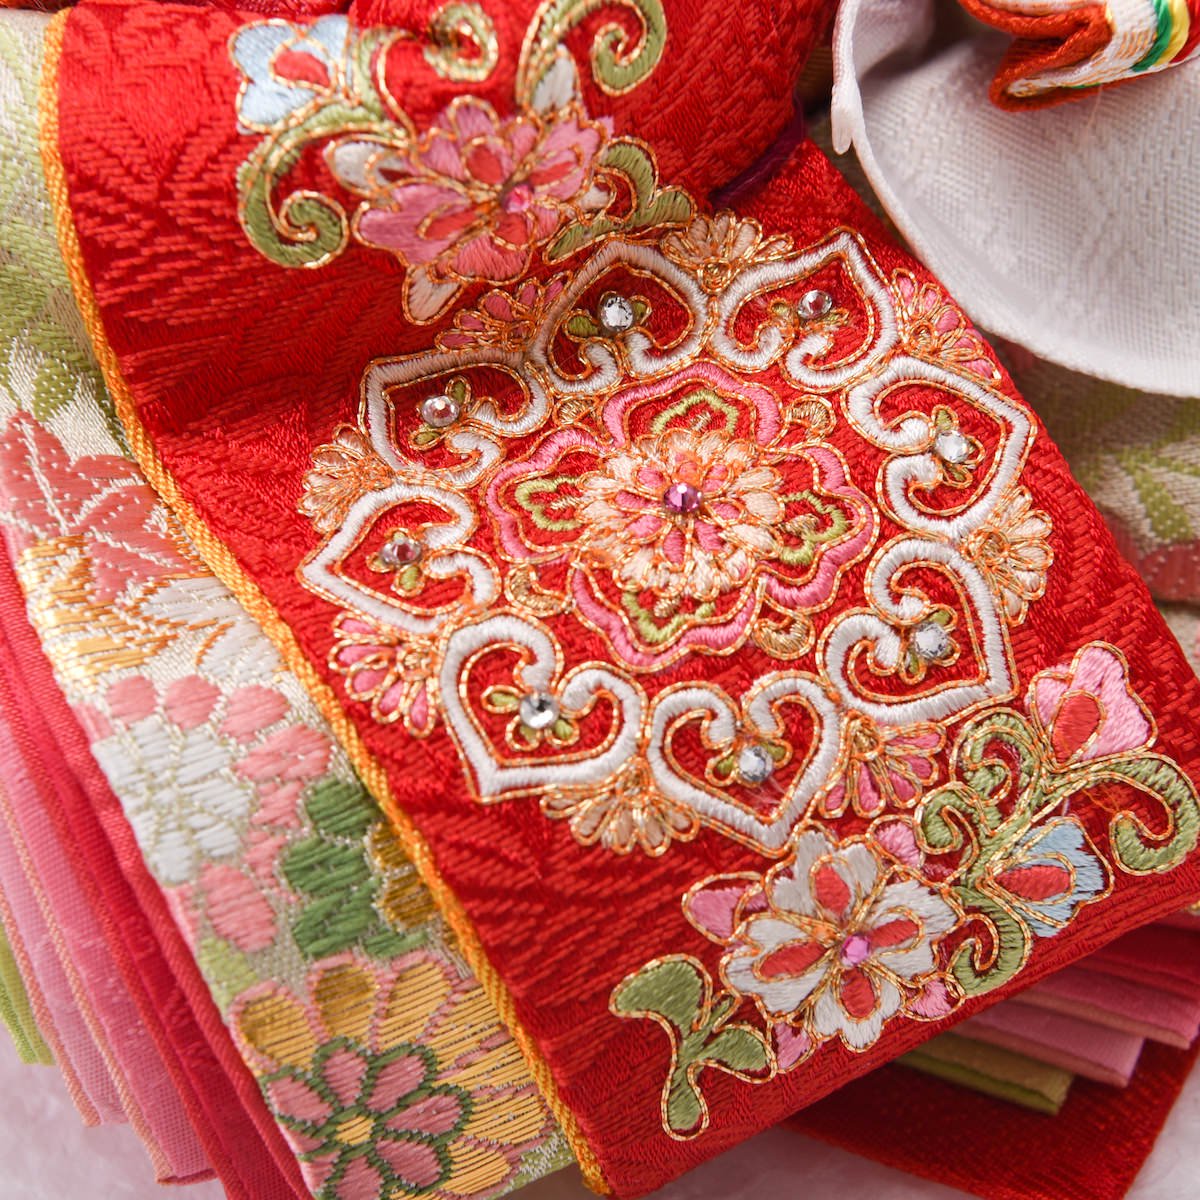 日本刺繍 手刺繍 絹糸 小物入れ 収納ボックス - 小物入れ